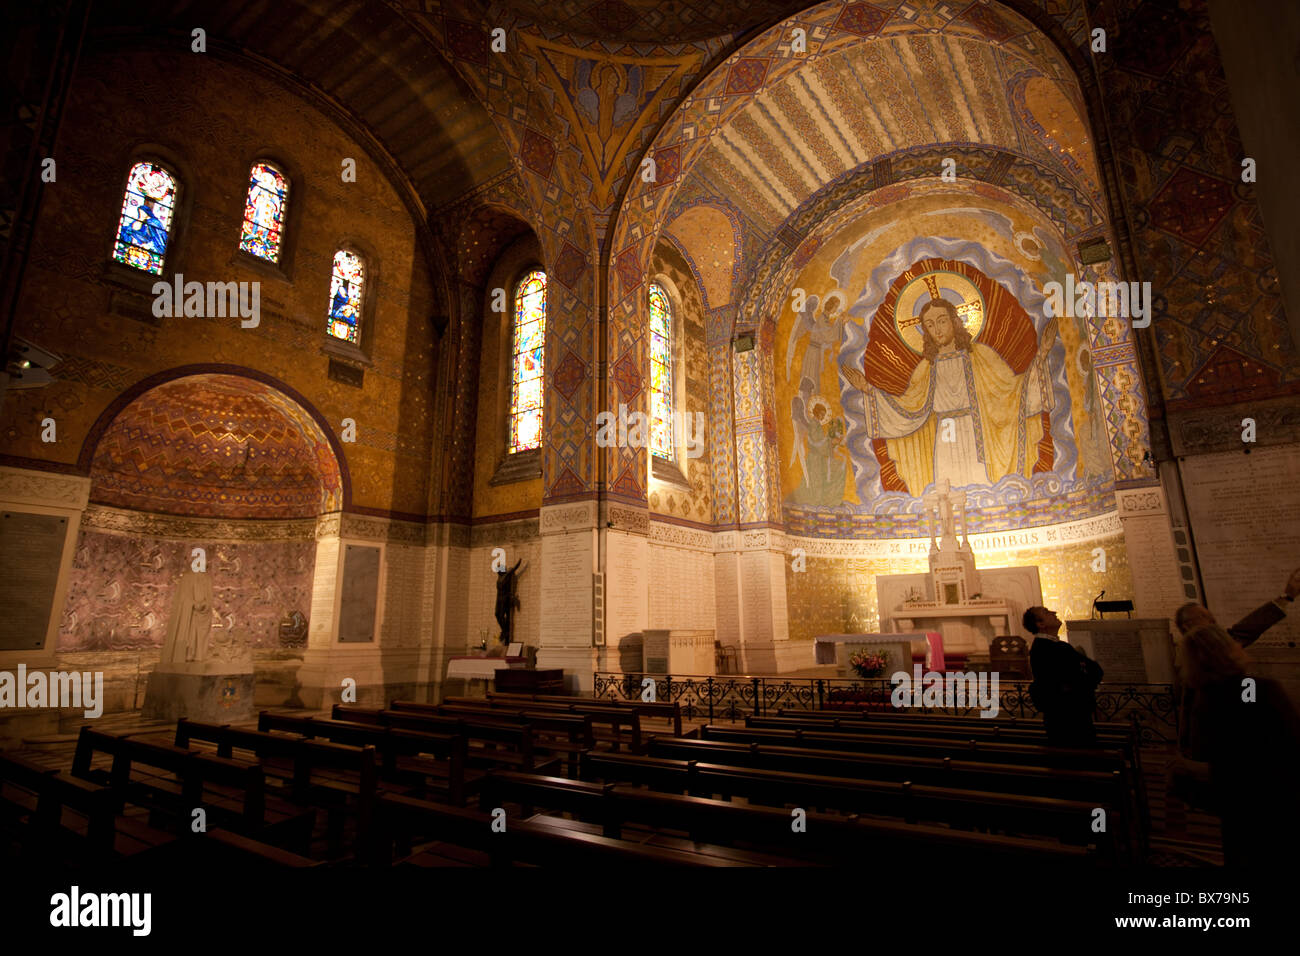 interior of the basilica of Notre - Dame - de Lorette Stock Photo